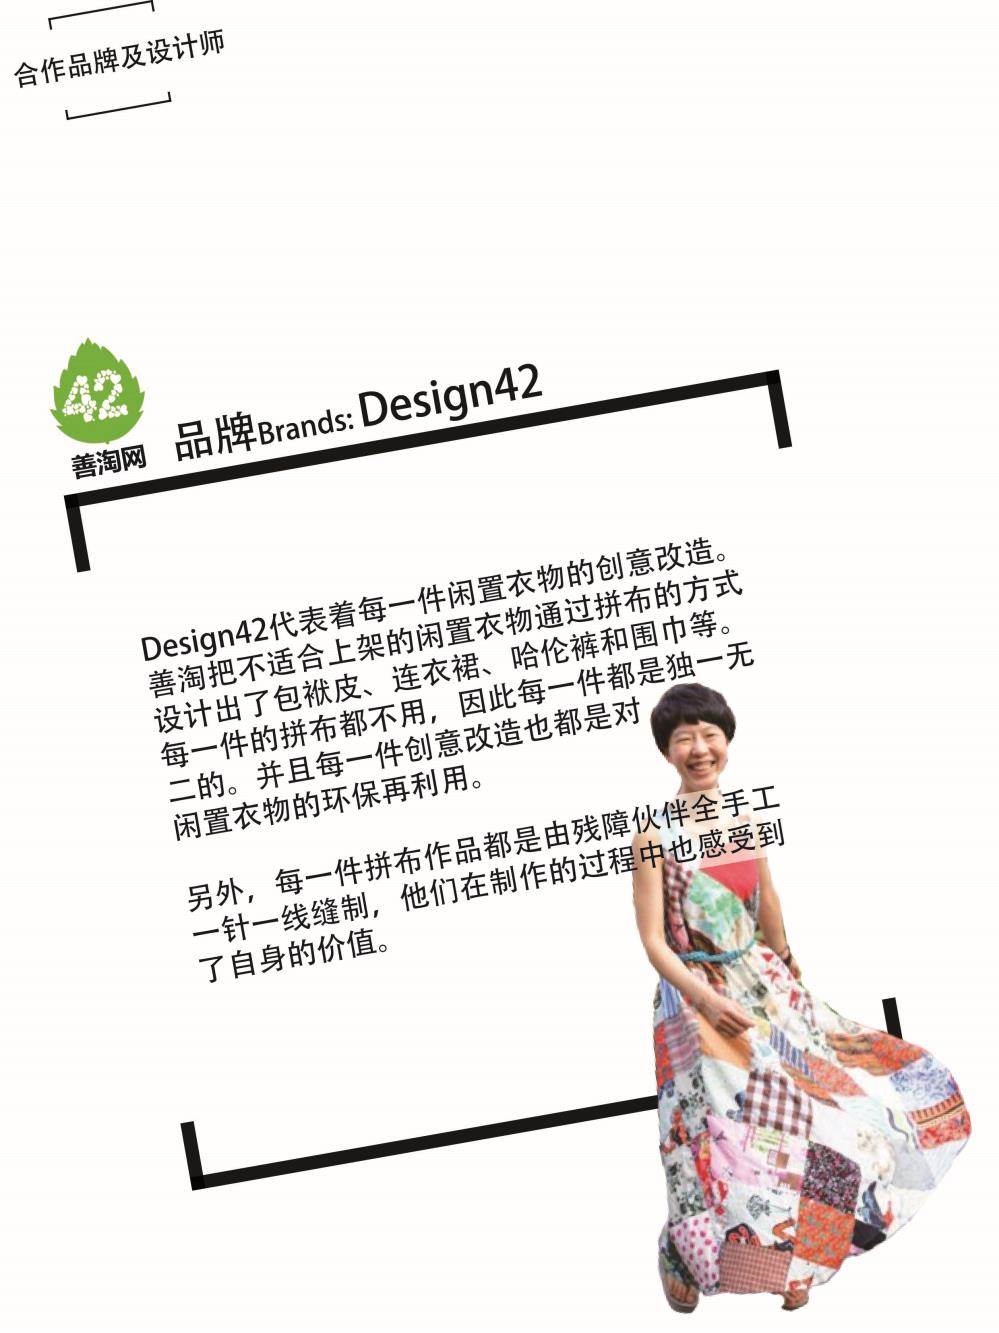 Design42.jpg